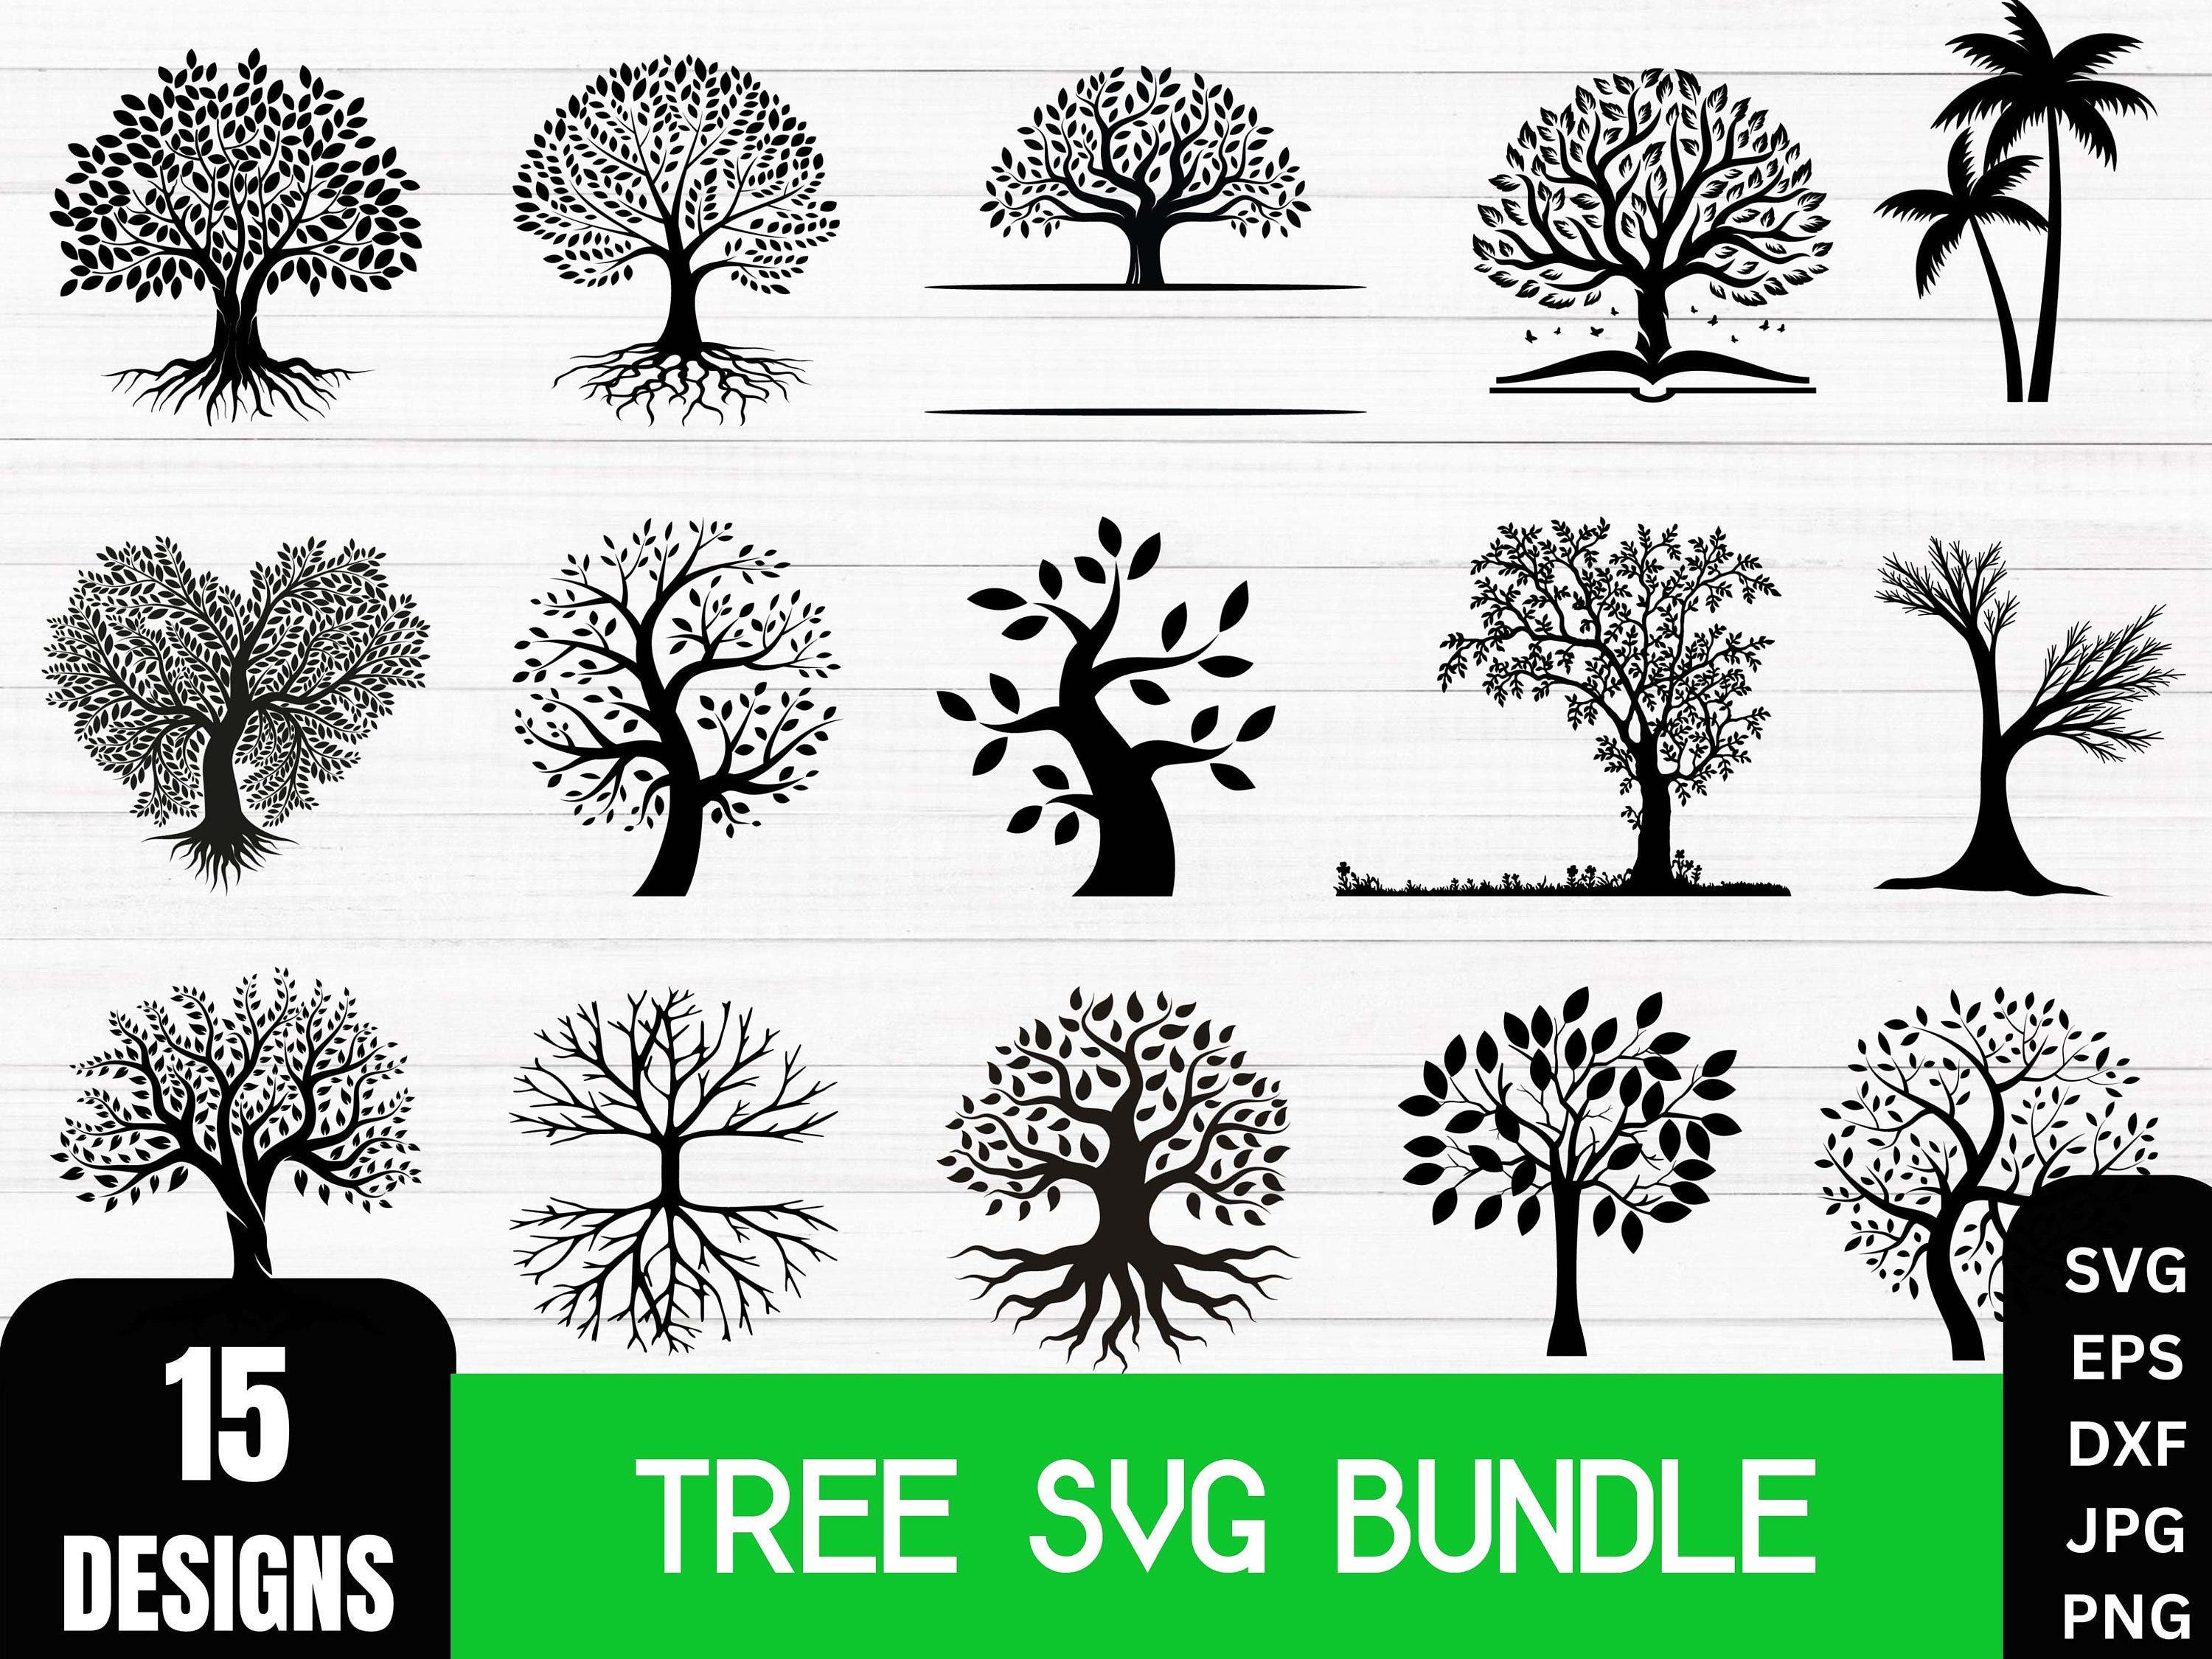 Tree svg bundle, Family Tree Svg bundle, Tree roots svg, Our Roots SVG, Family svg, Tree of Life Clipart, Tree Cut File, Tree Svg, Trees Svg